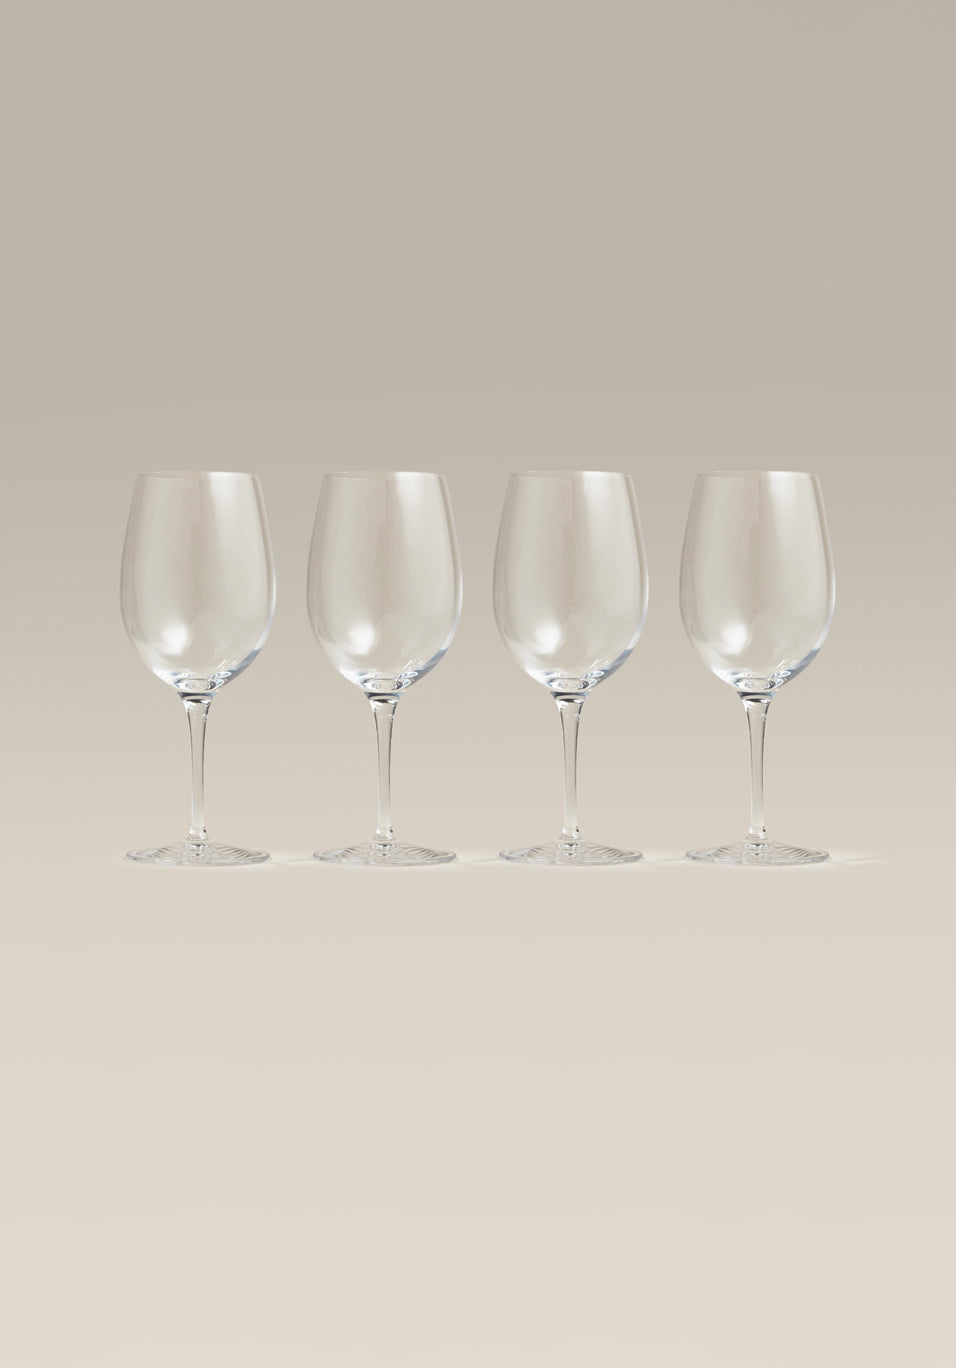 Wine Glasses, Wine Glass Set